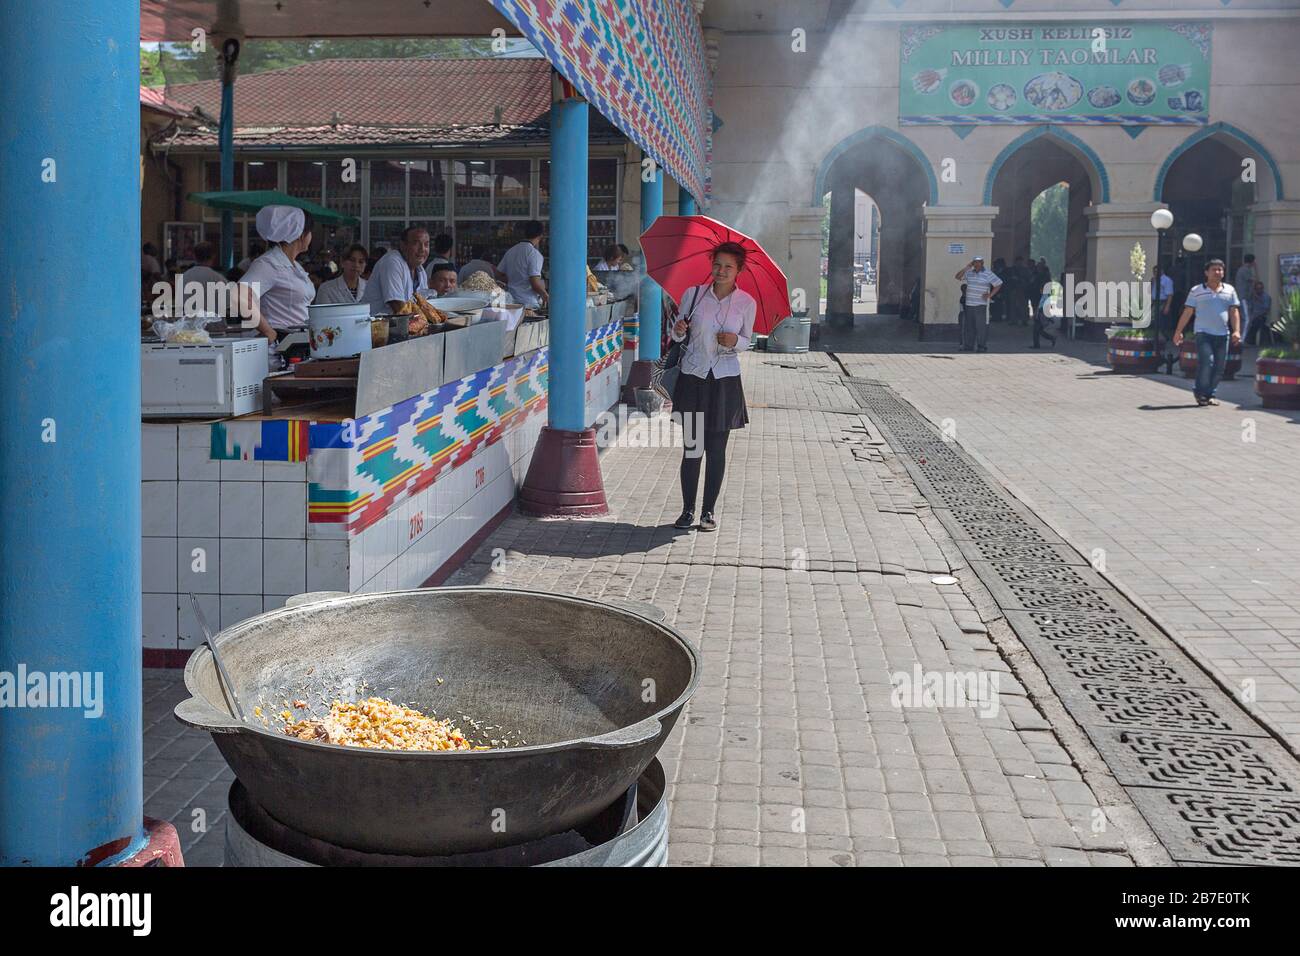 Street with food stands, in Tashkent, Uzbekistan Stock Photo